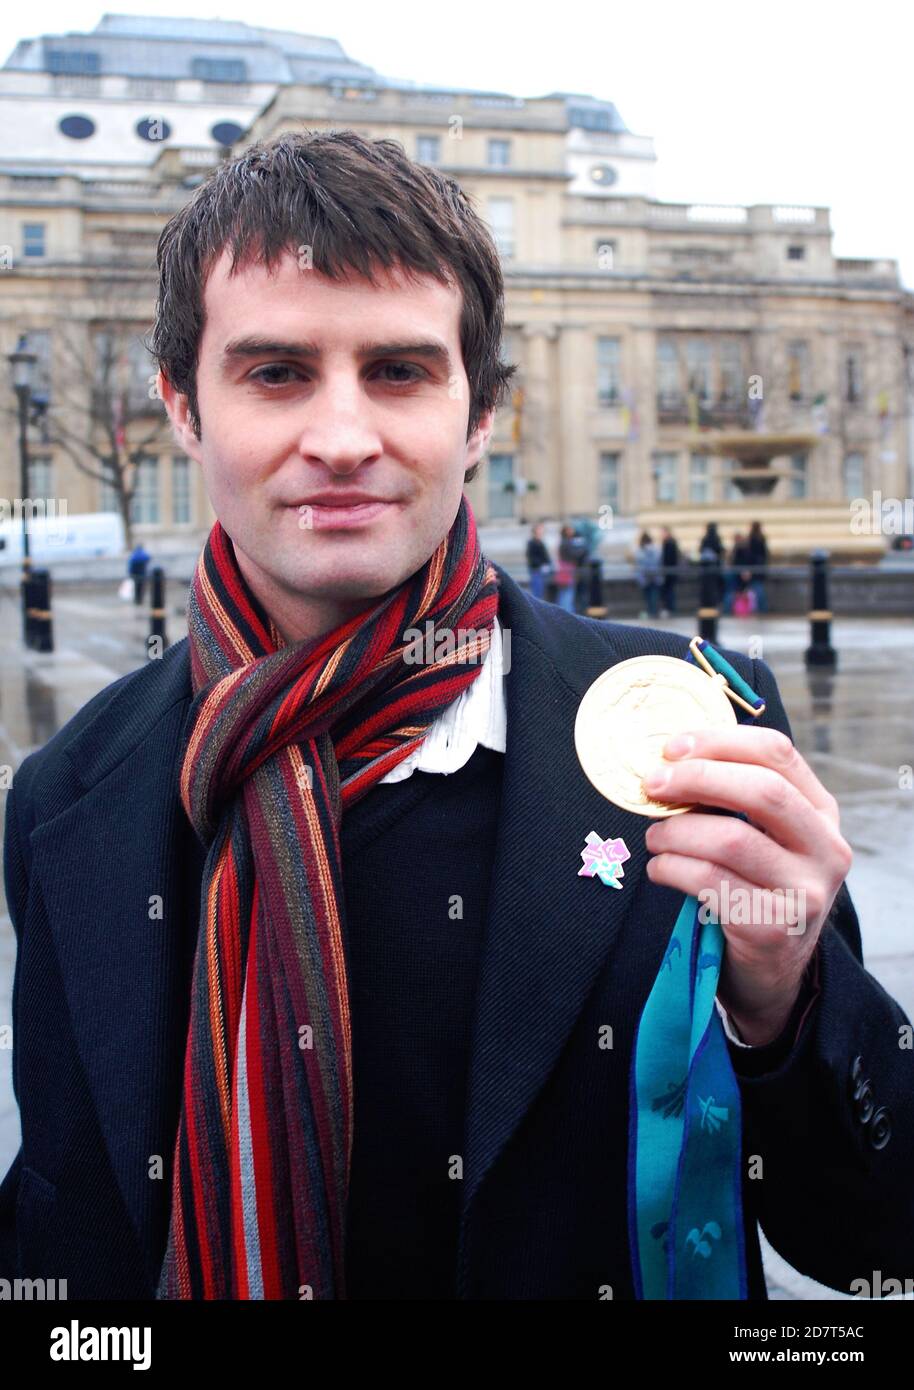 Giles Long MBE, ganador del oro olímpico, LEXI inventor, ponente público de nadadores, presentador, con su medalla de oro olímpica de los Juegos Paralímpicos de Sydney 2000 Foto de stock